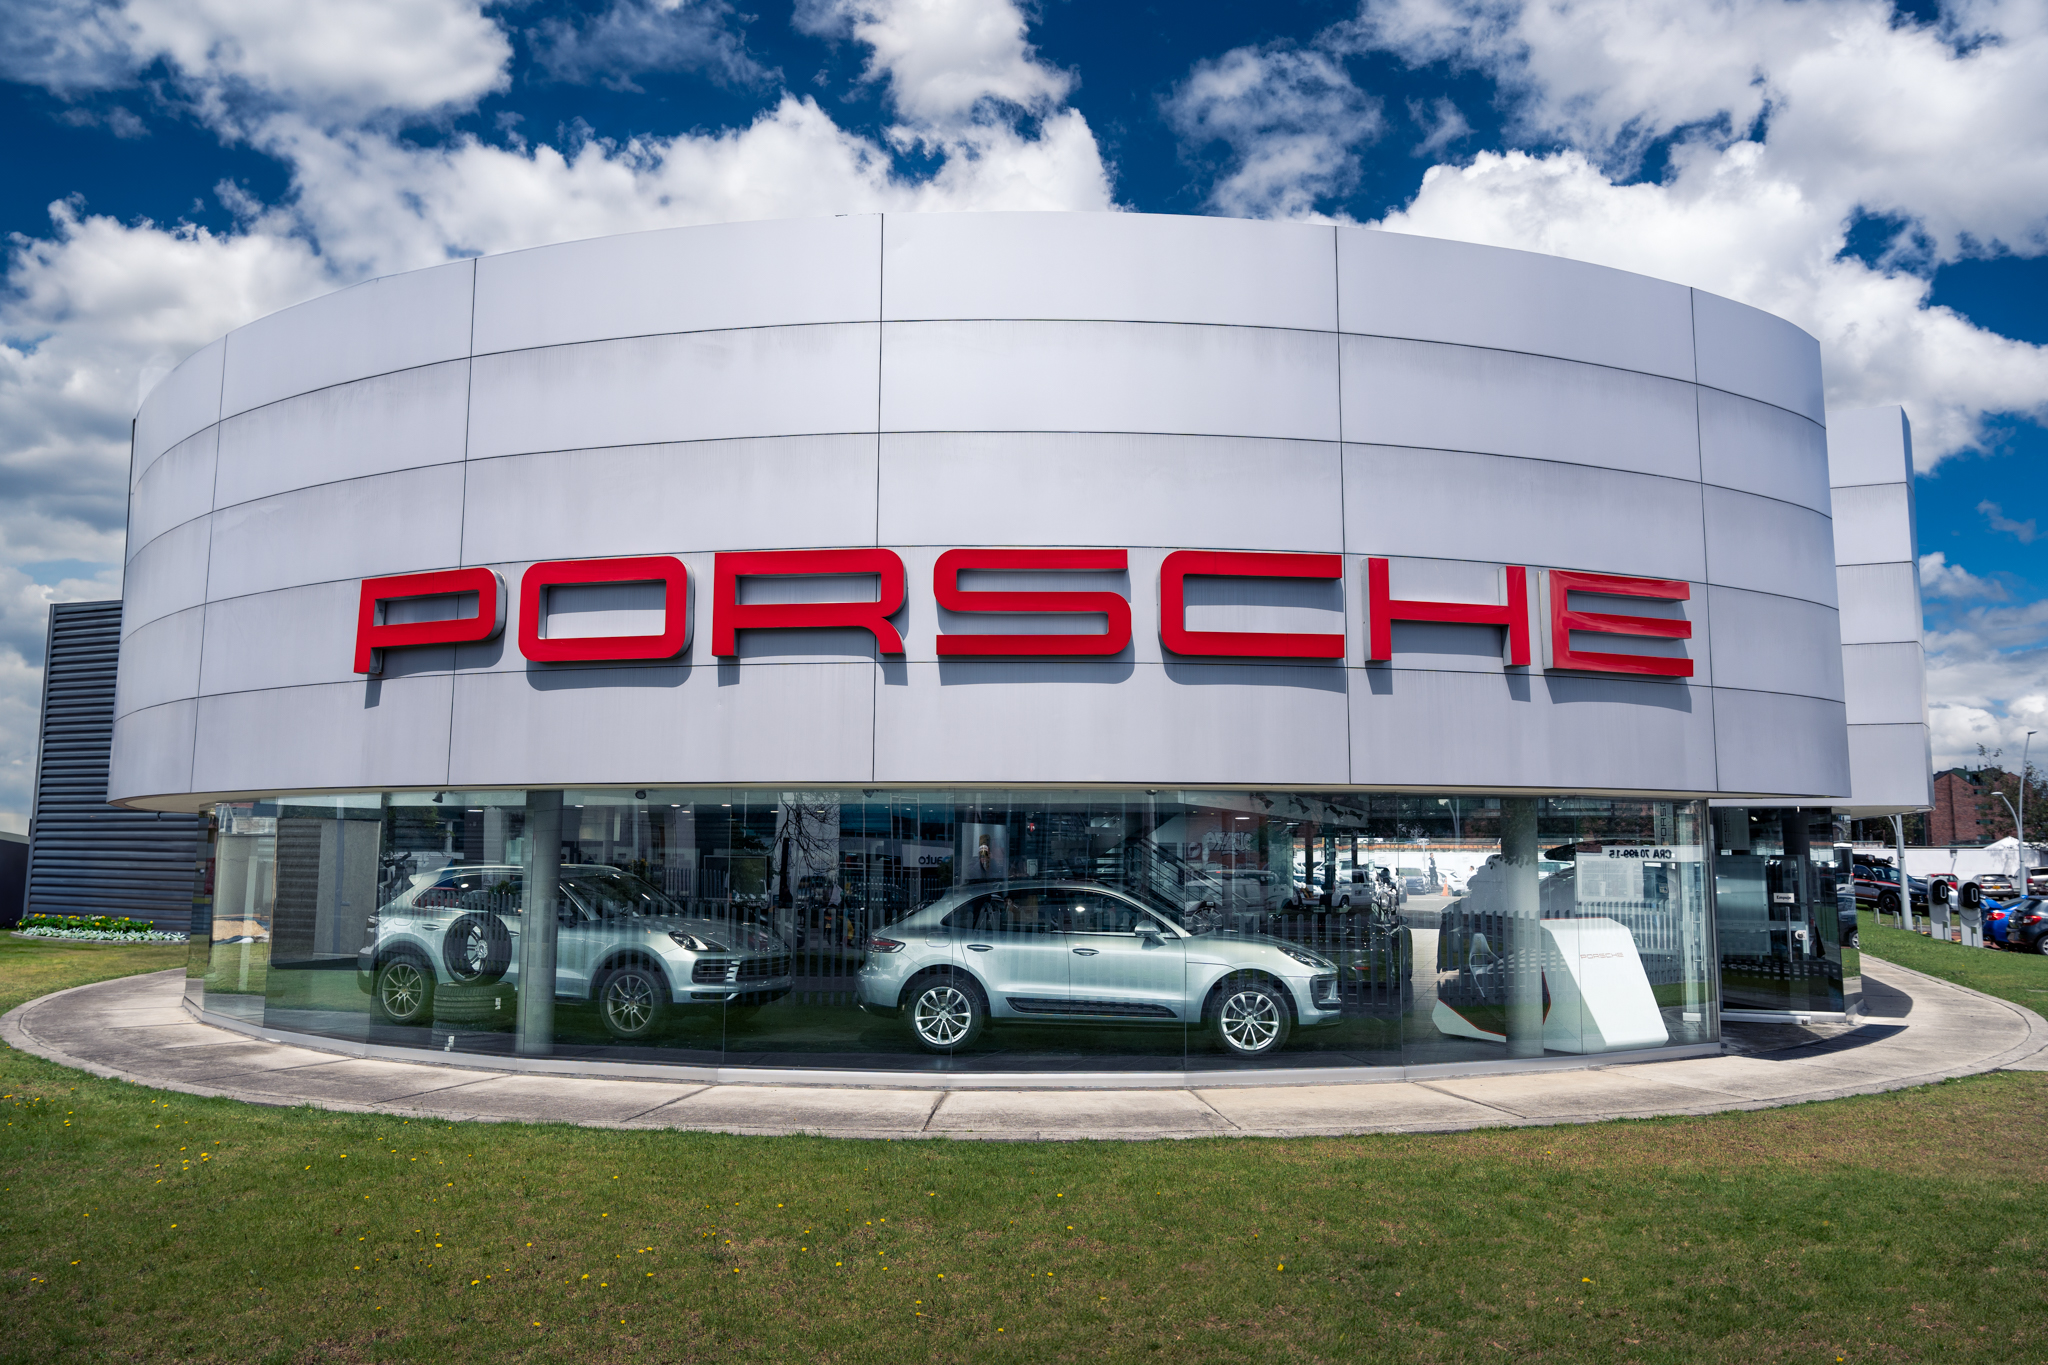 Imagen de concesionario Porsche por nota sobre nuevas remodelaciones en sus puntos de venta